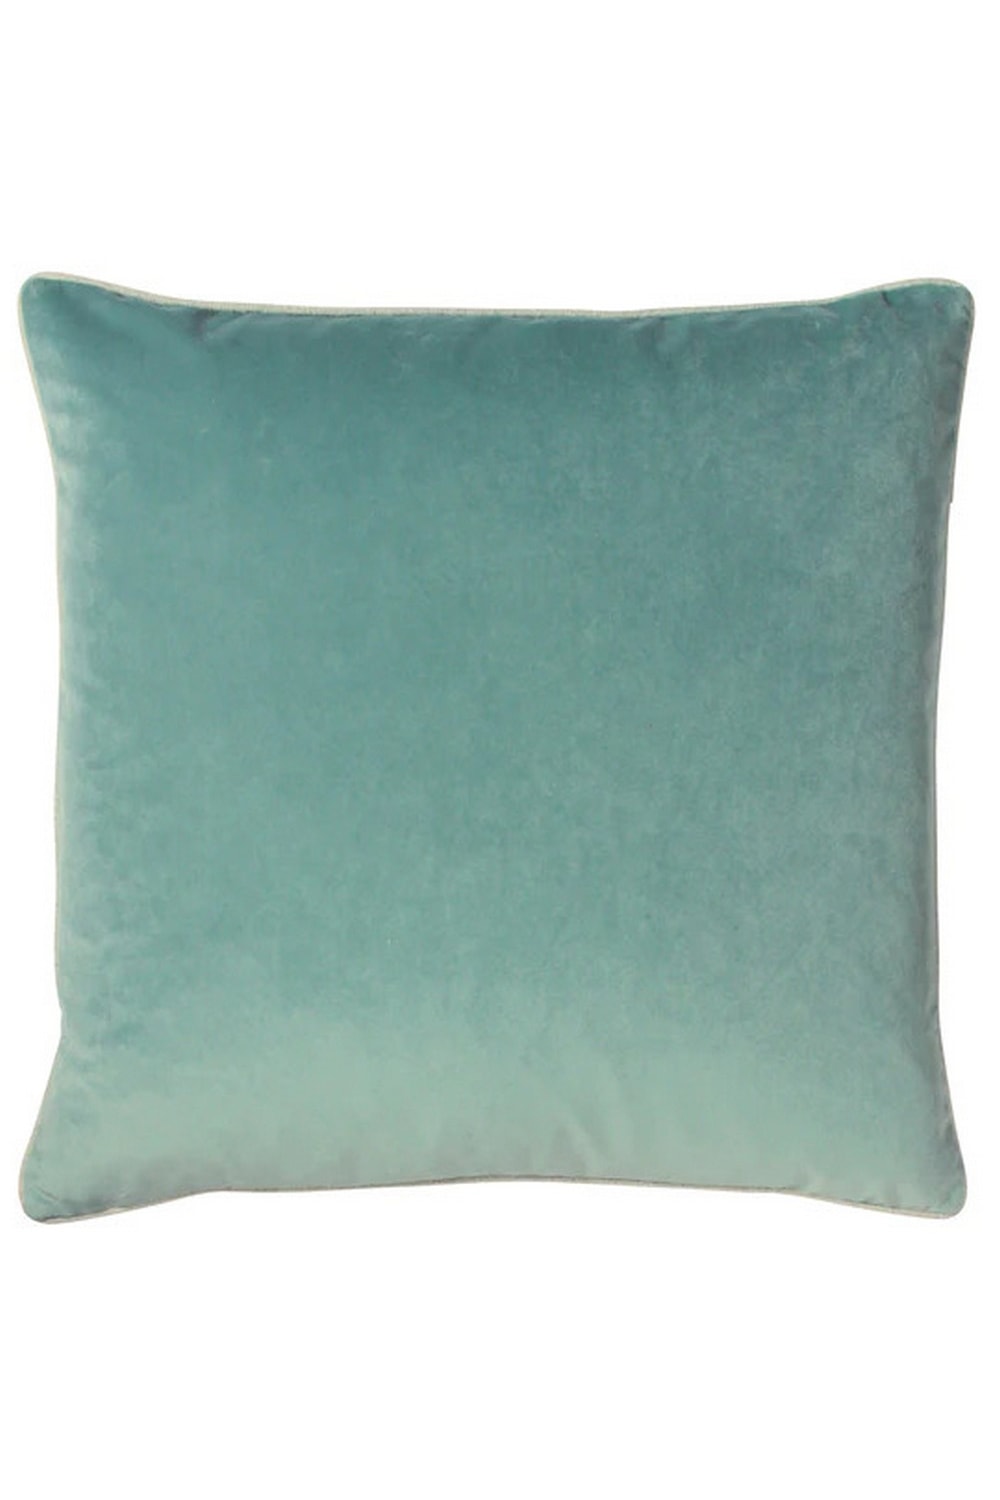 Cohen Velvet Throw Pillow Cover- Blue Mist